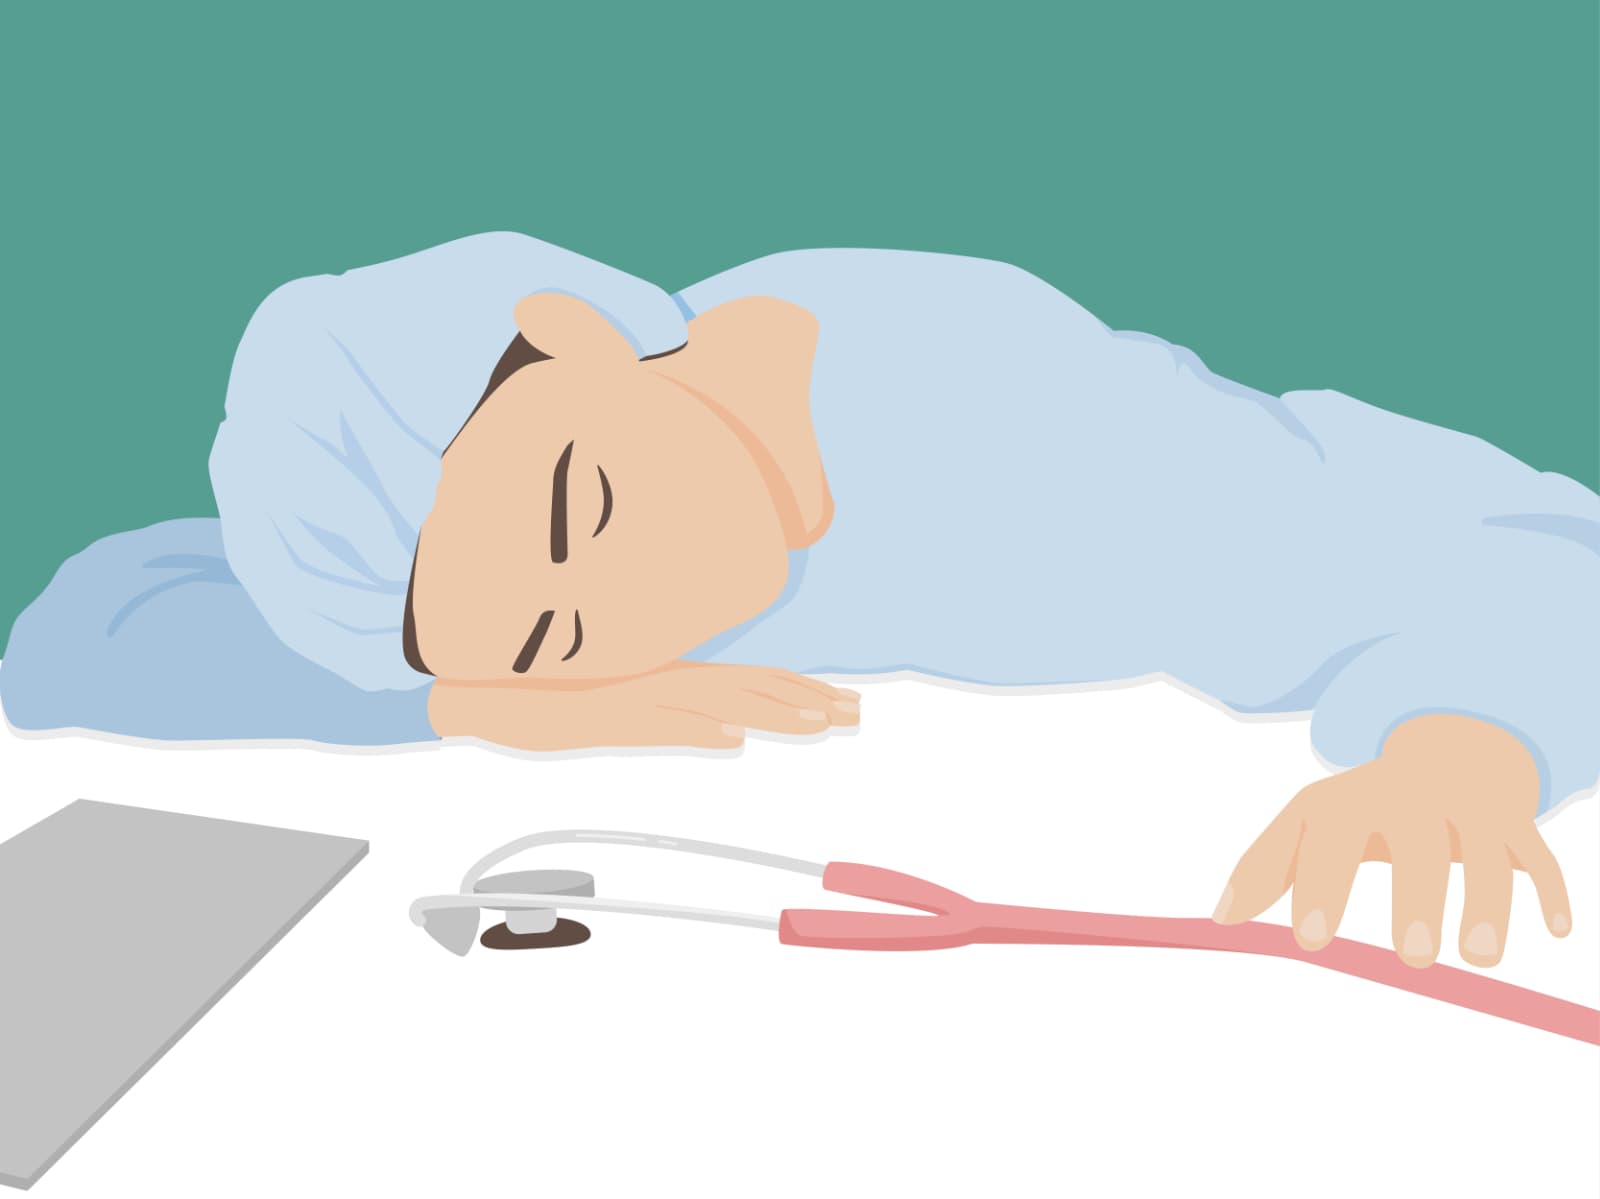 Schlaftipps für Schichtarbeiter: Entspannungsrituale können dabei helfen, nach einer Nachtschicht besser zu schlafen.